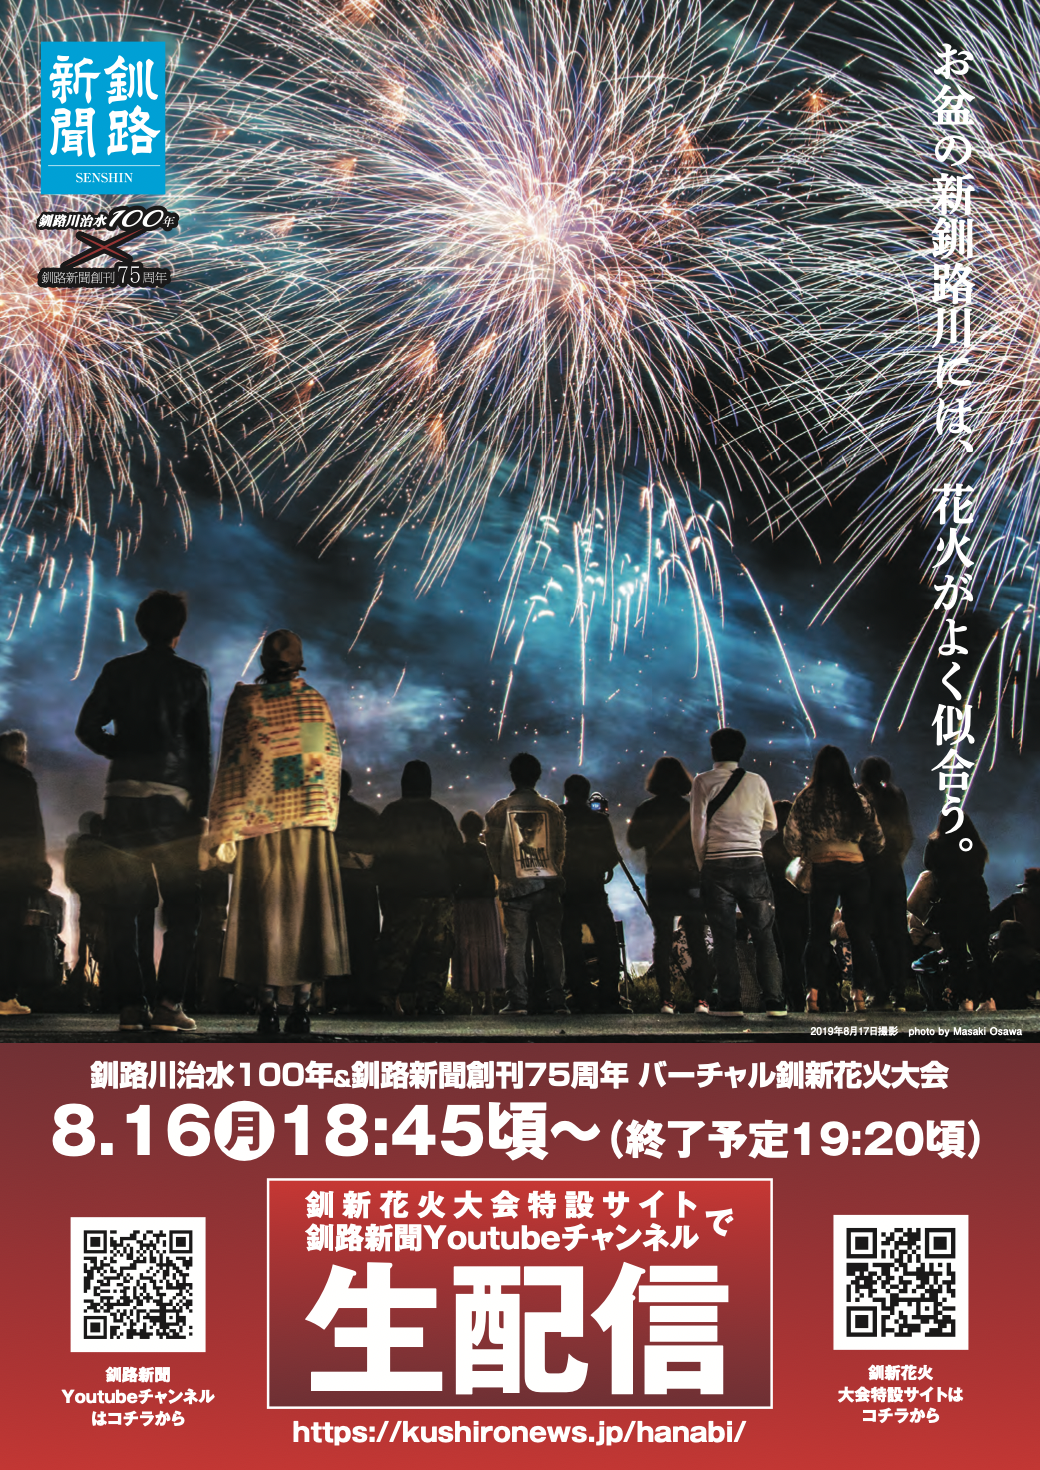 くしろcotoイベント 釧路新聞社の 釧新花火大会 が今年はcgを駆使したバーチャル花火大会として開催 くしろcoto イベント